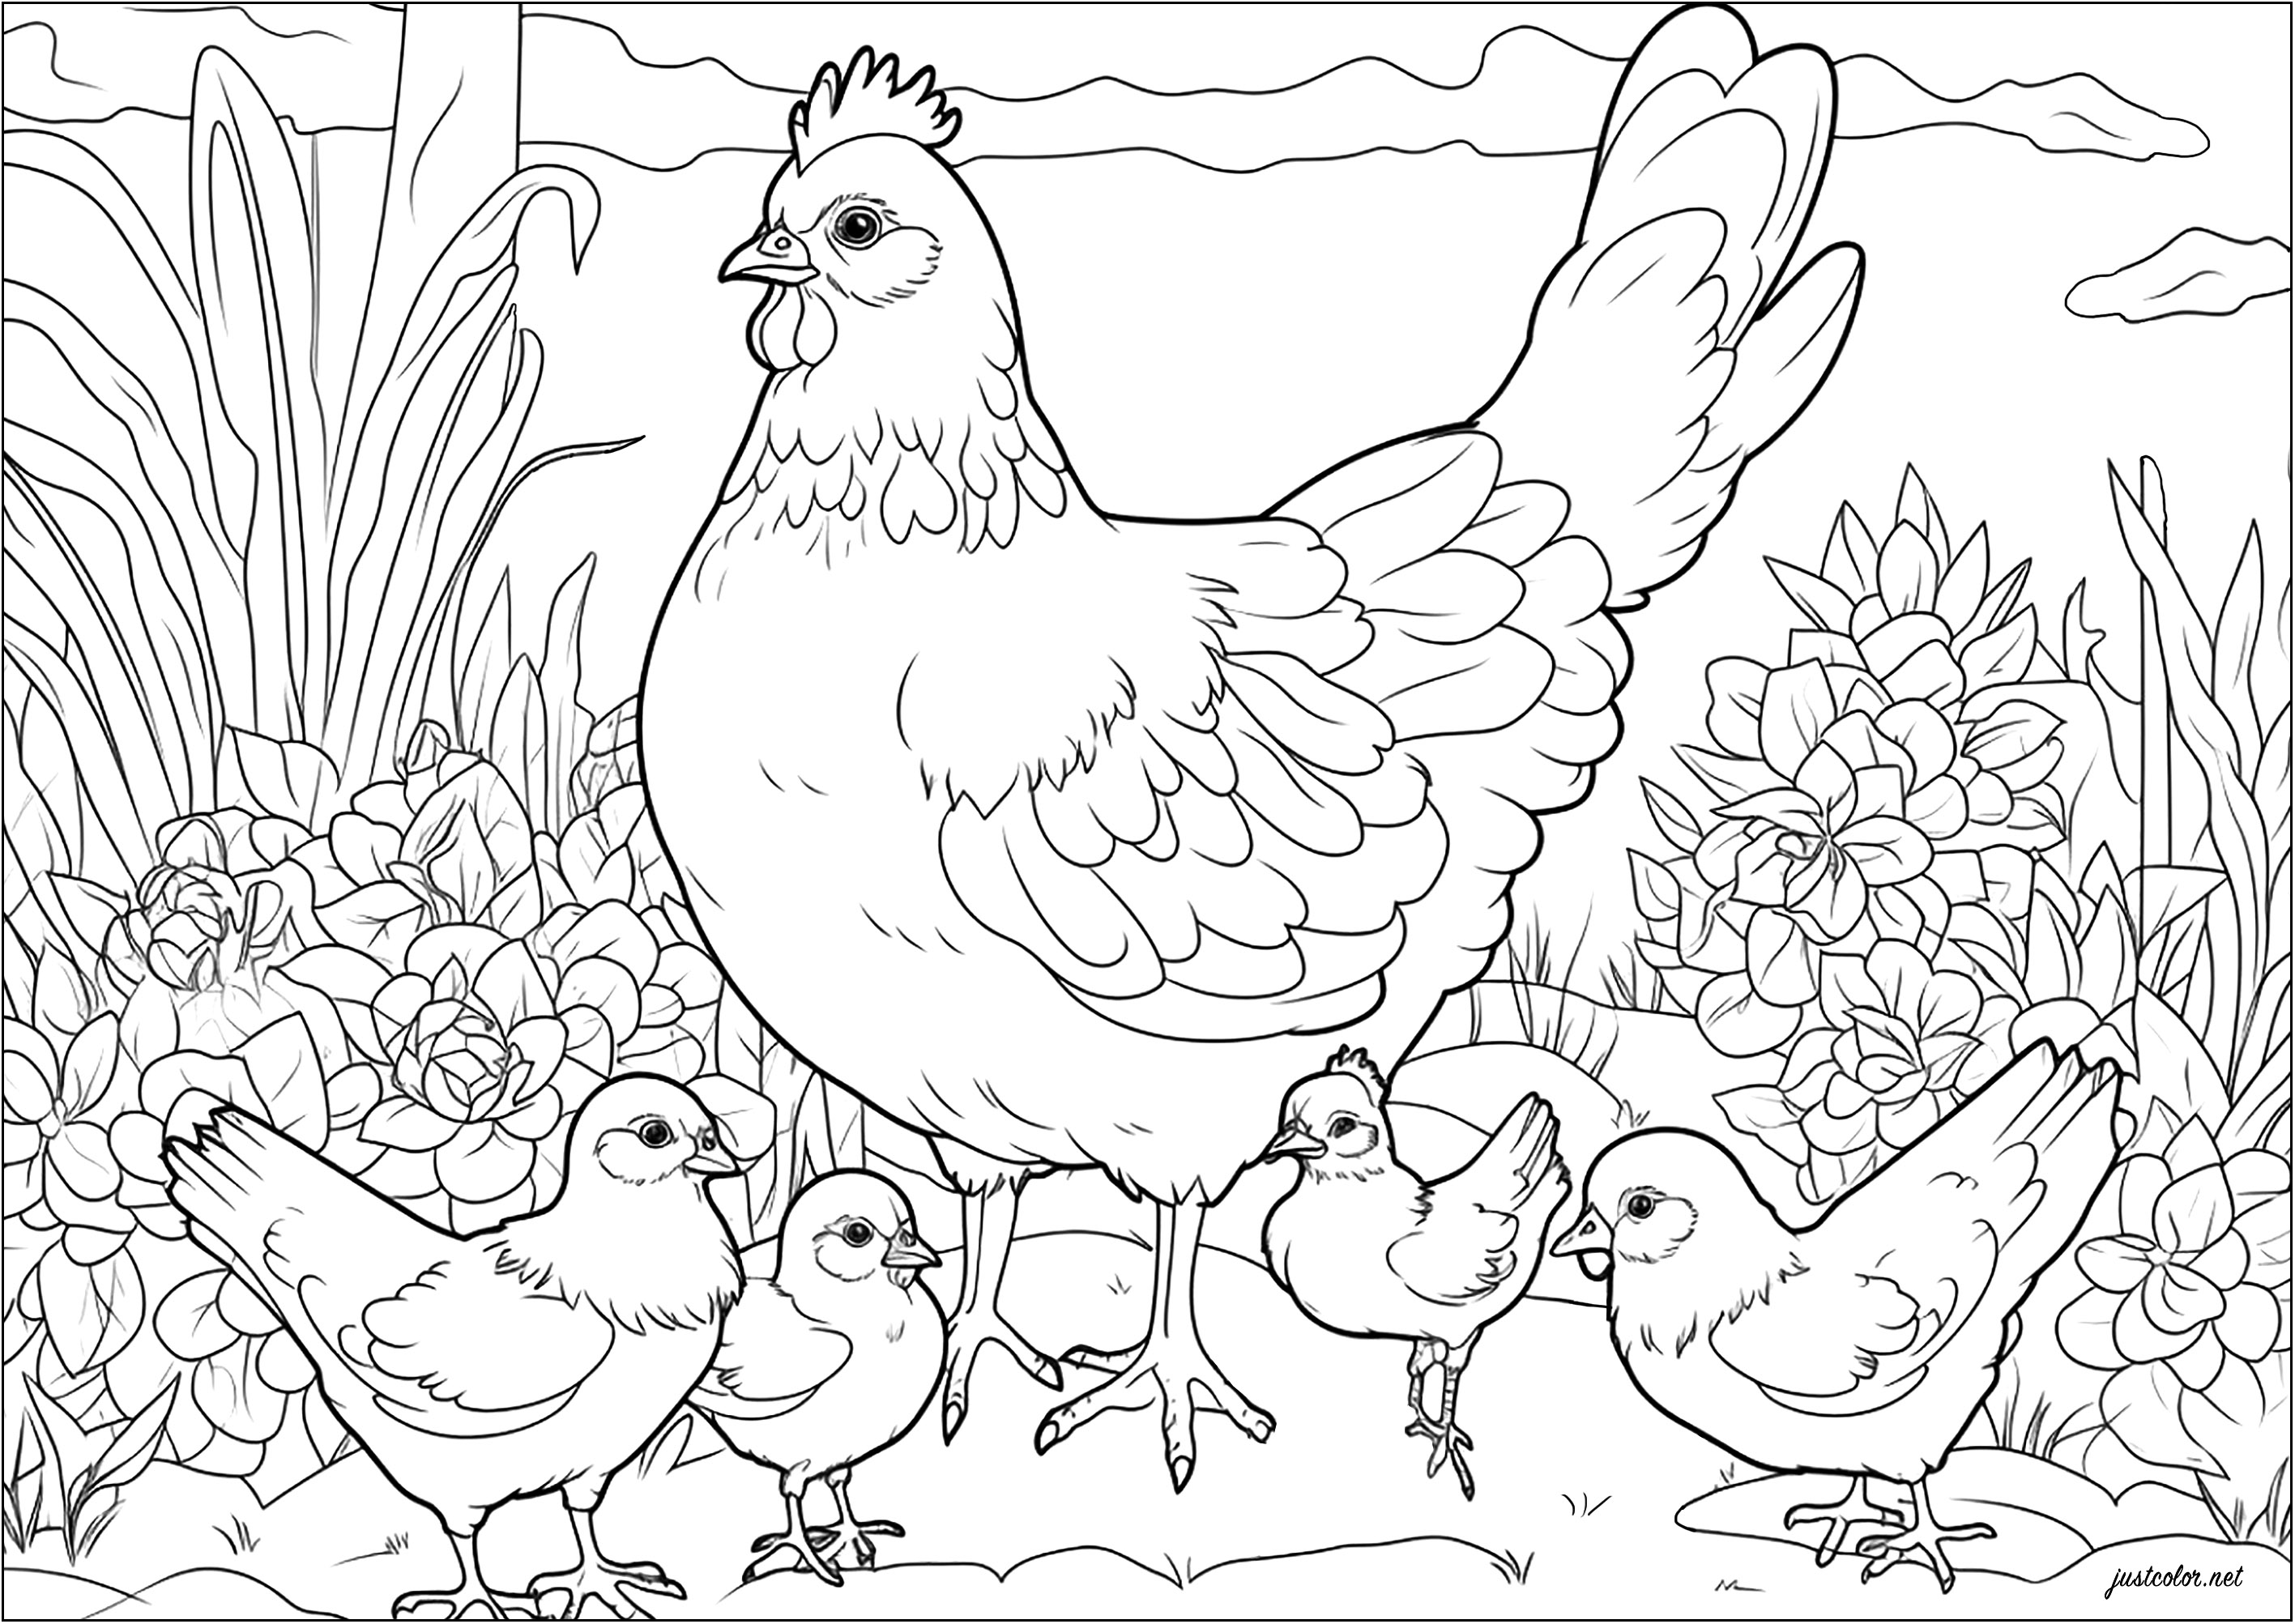 Ausmalen einer Henne und ihrer Küken. Diese Henne beschützt stolz ihre Jungen.
Wunderschöne Vegetation im Hintergrund, die man auch färben kann.